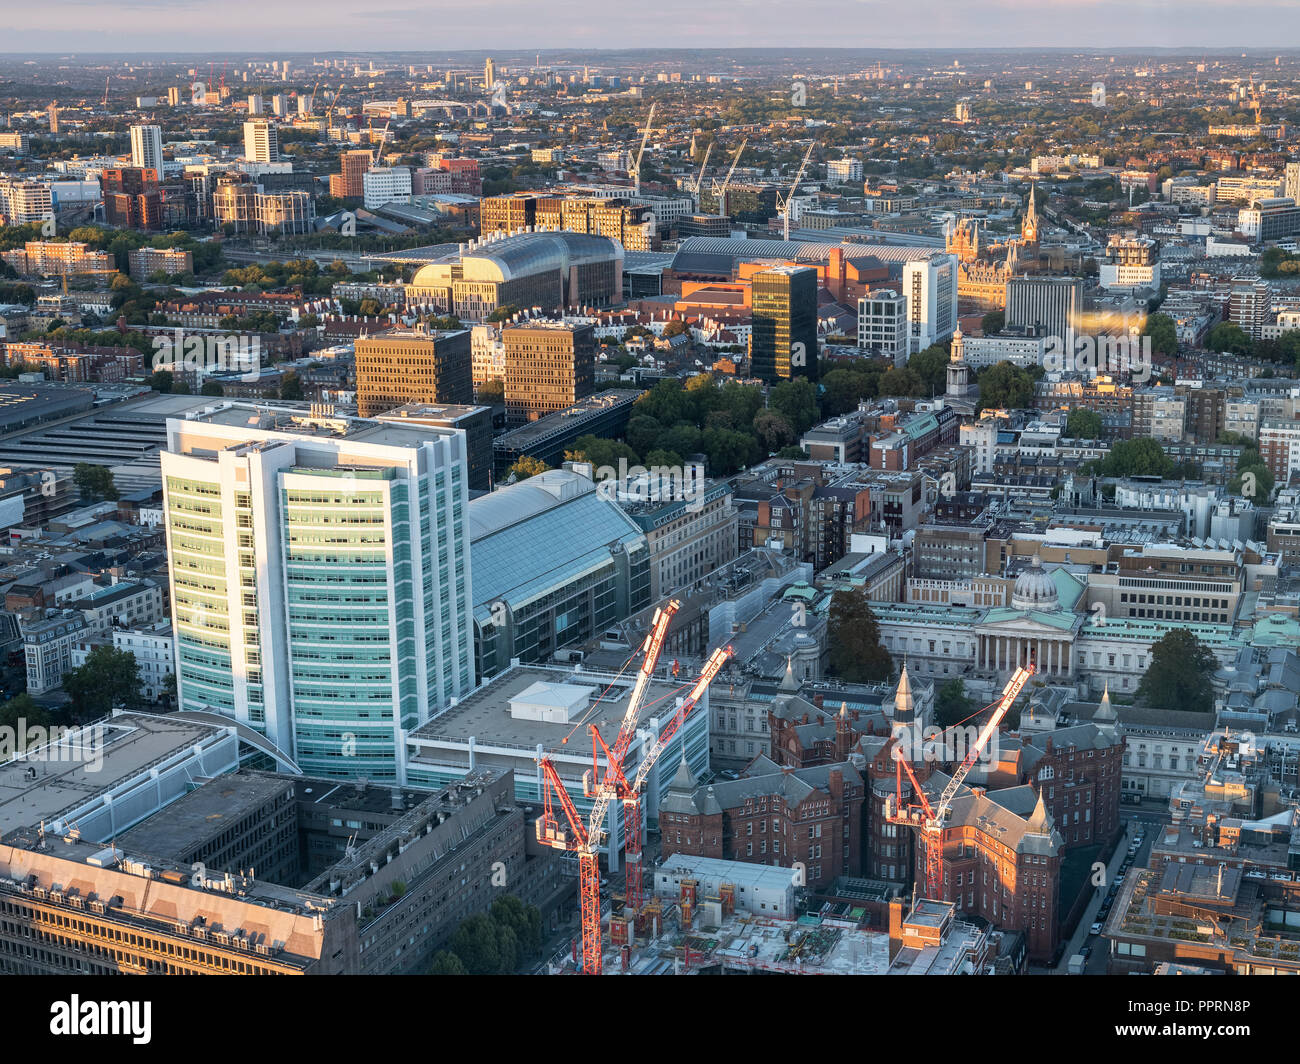 23 septembre 2018, Open House London, BT Tower plate-forme d'observation, à l'est le long de l'Euston Road avec l'UCL et de l'hôpital Kings Cross dans la vue Banque D'Images